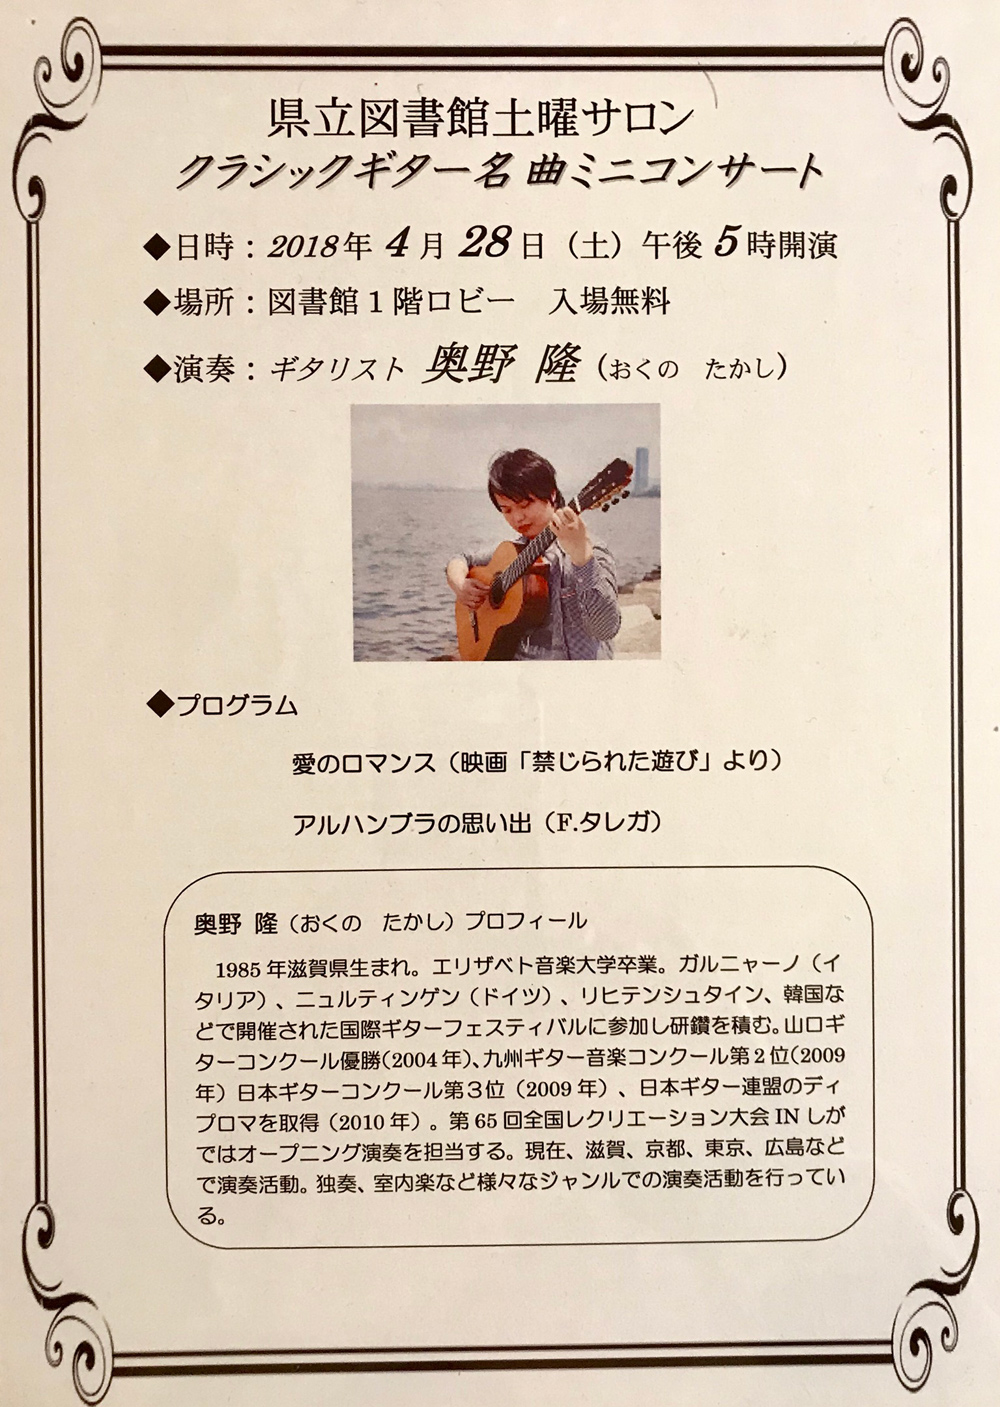 奥野隆コンサート情報 クラシックギター名曲ミニコンサート